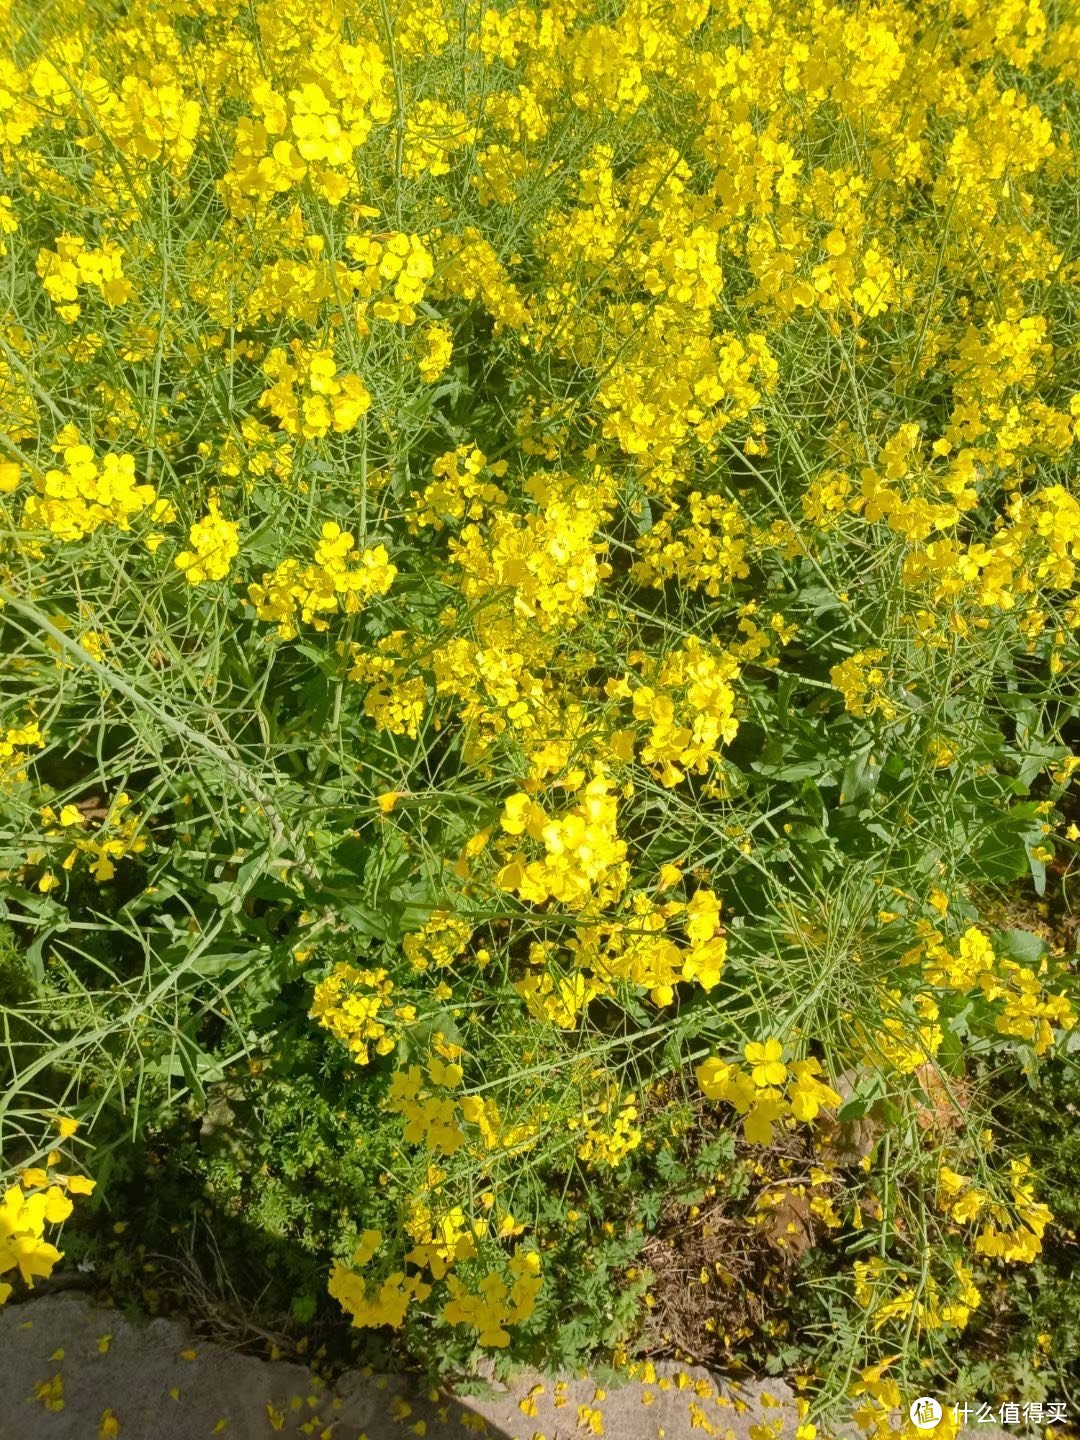 春天最美的风景，就是那一片片金黄的油菜花田。🌼🌼🌼